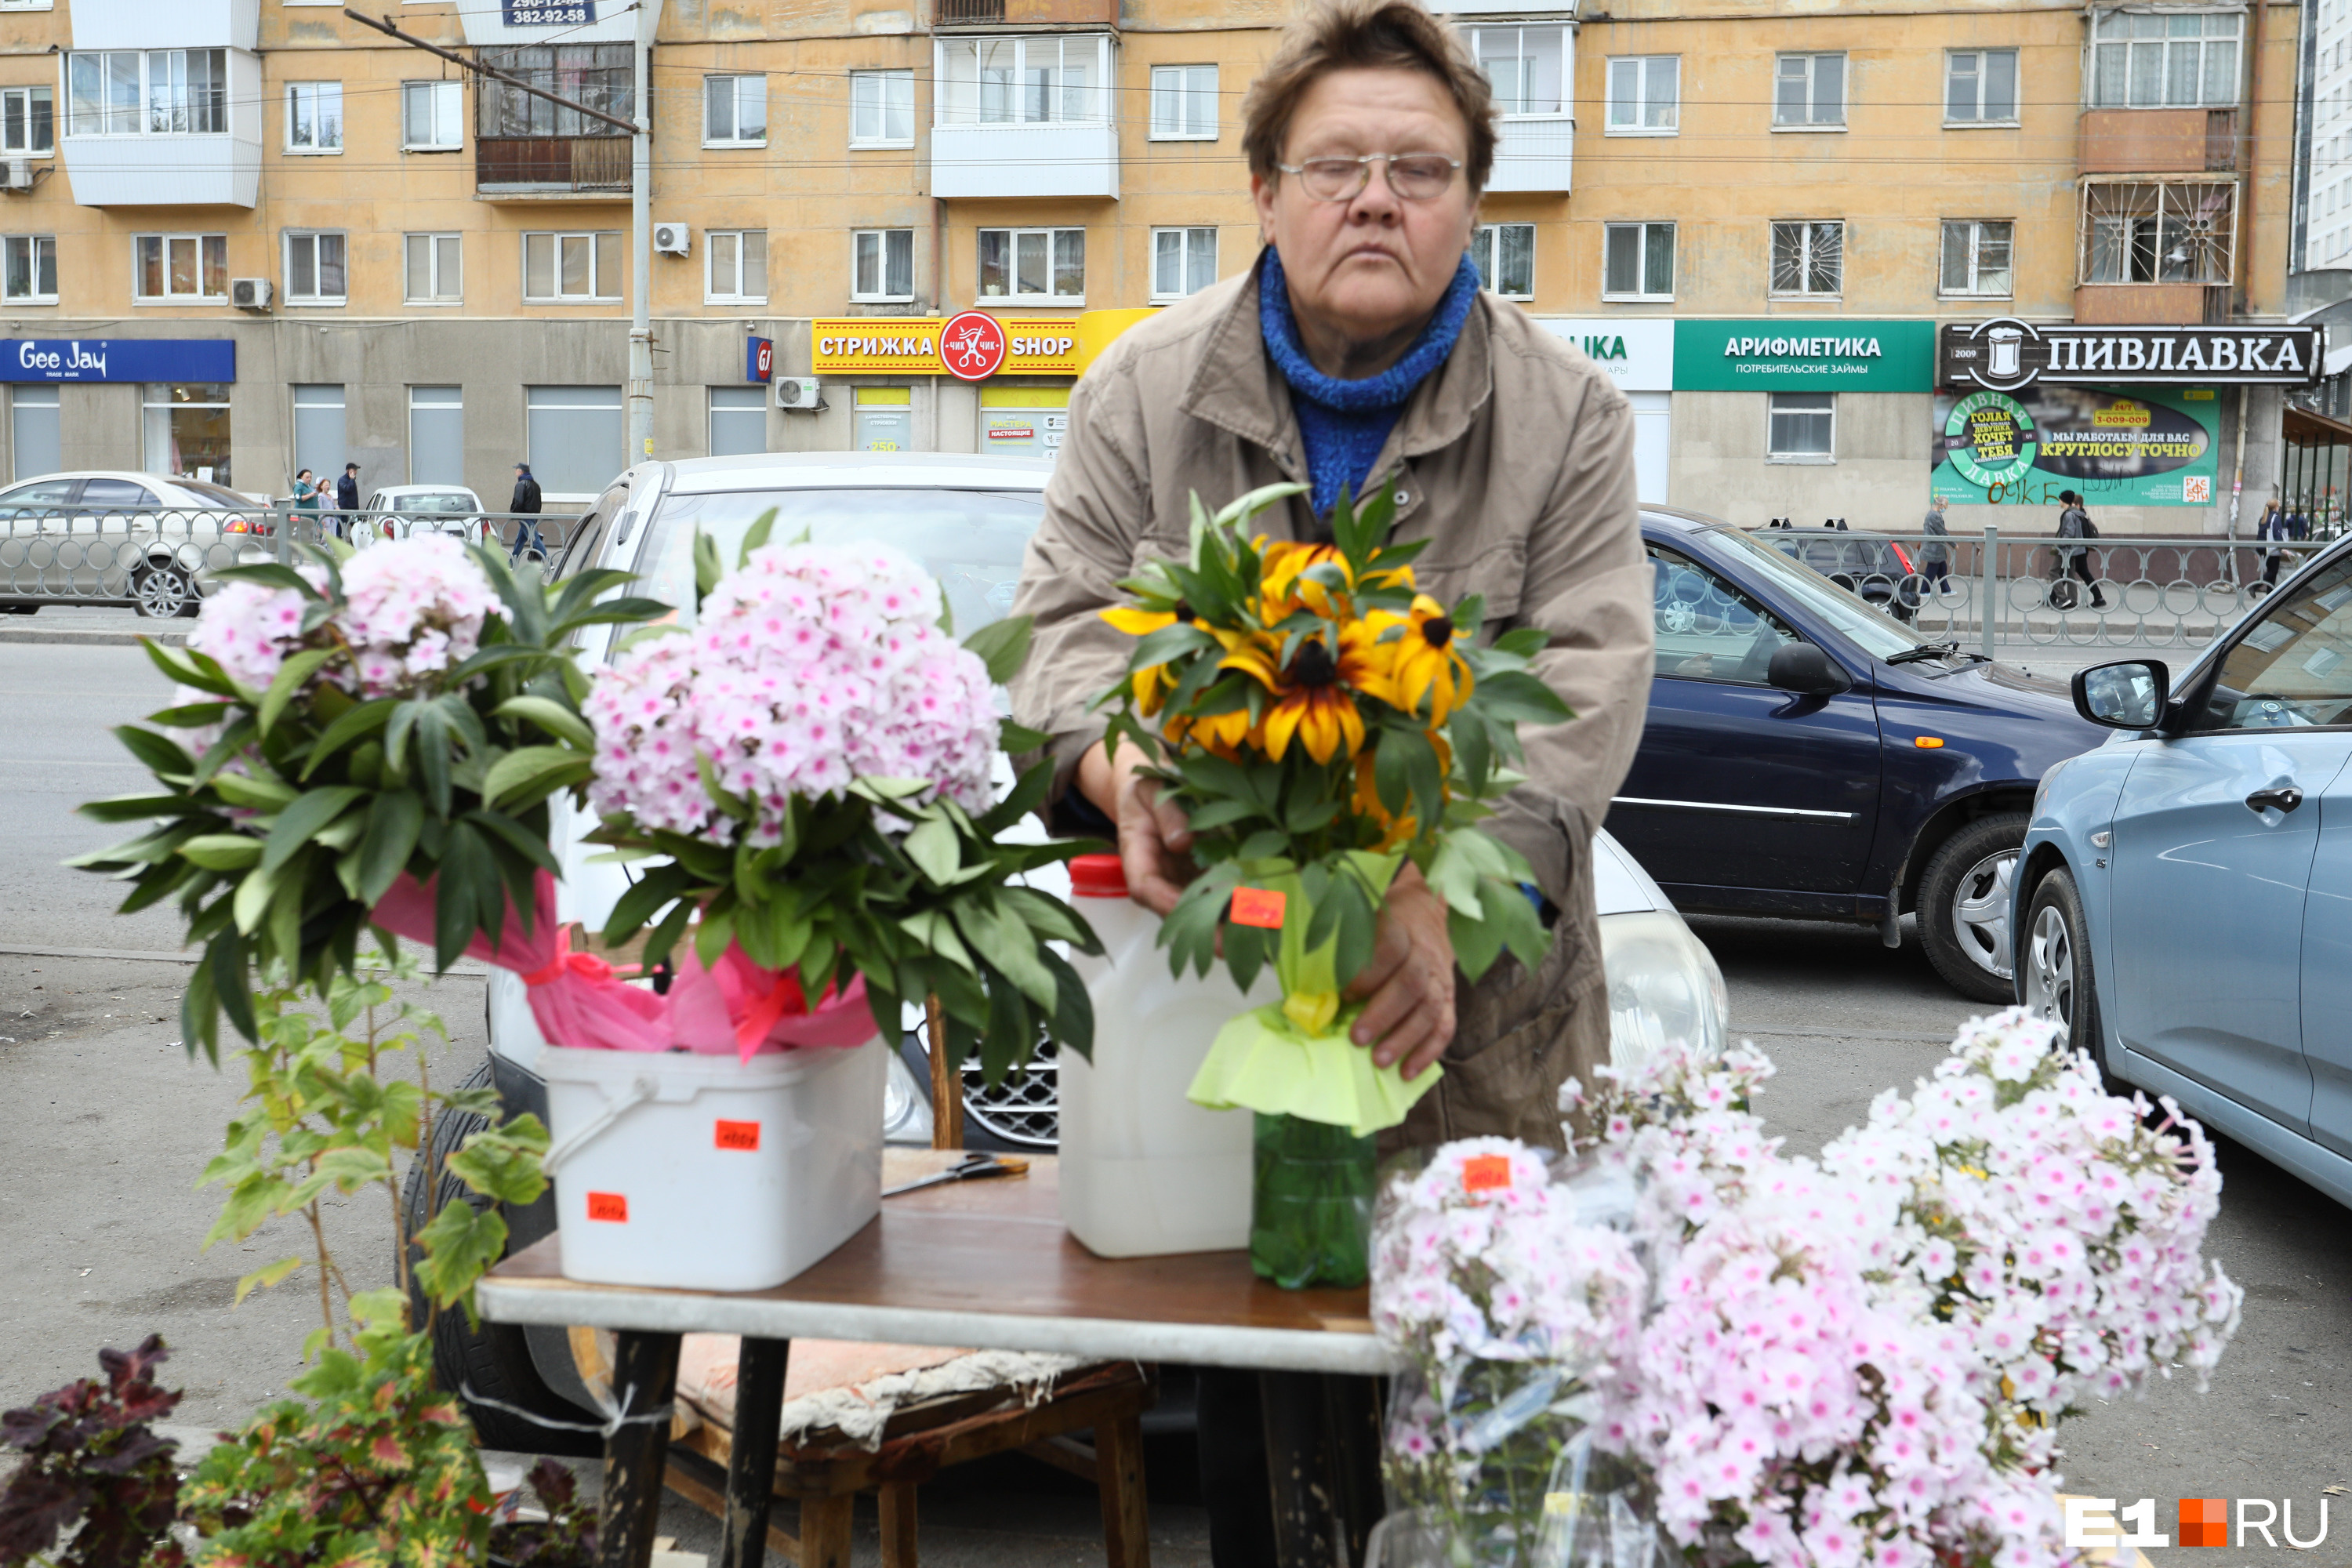 Желтые цветы в руках этой женщины — рудбекия, по 150 рублей за букет